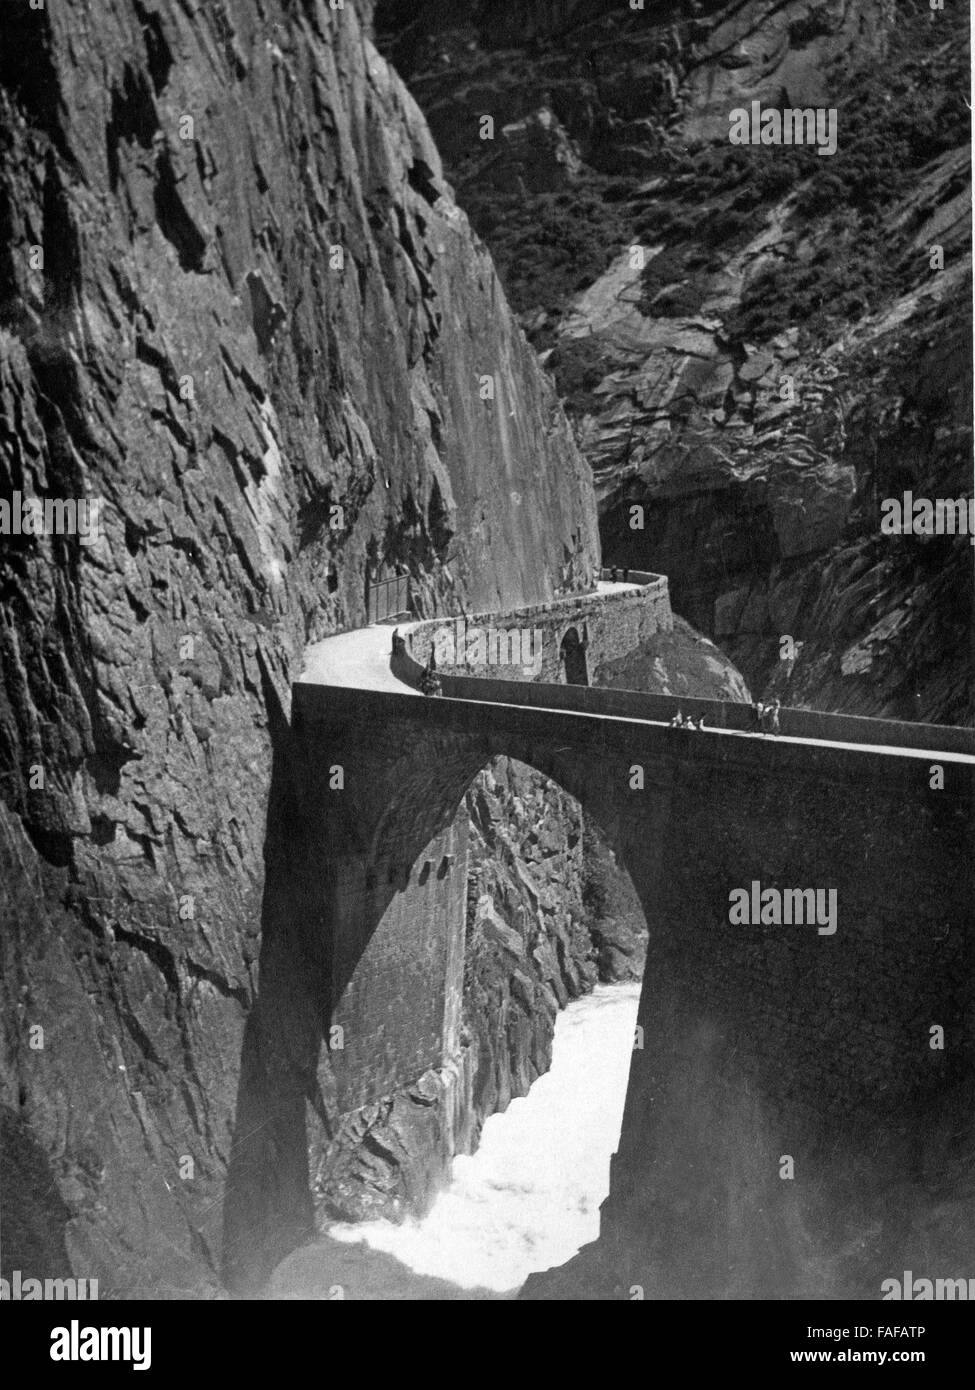 Die Teufelsbrücke in der Schöllenenschlucht im Kanton Uri, Schweiz 1930er Jahre. Ponte Teufelsbruecke a Schoellenen canyon nel canton Uri, Svizzera 1930s. Foto Stock